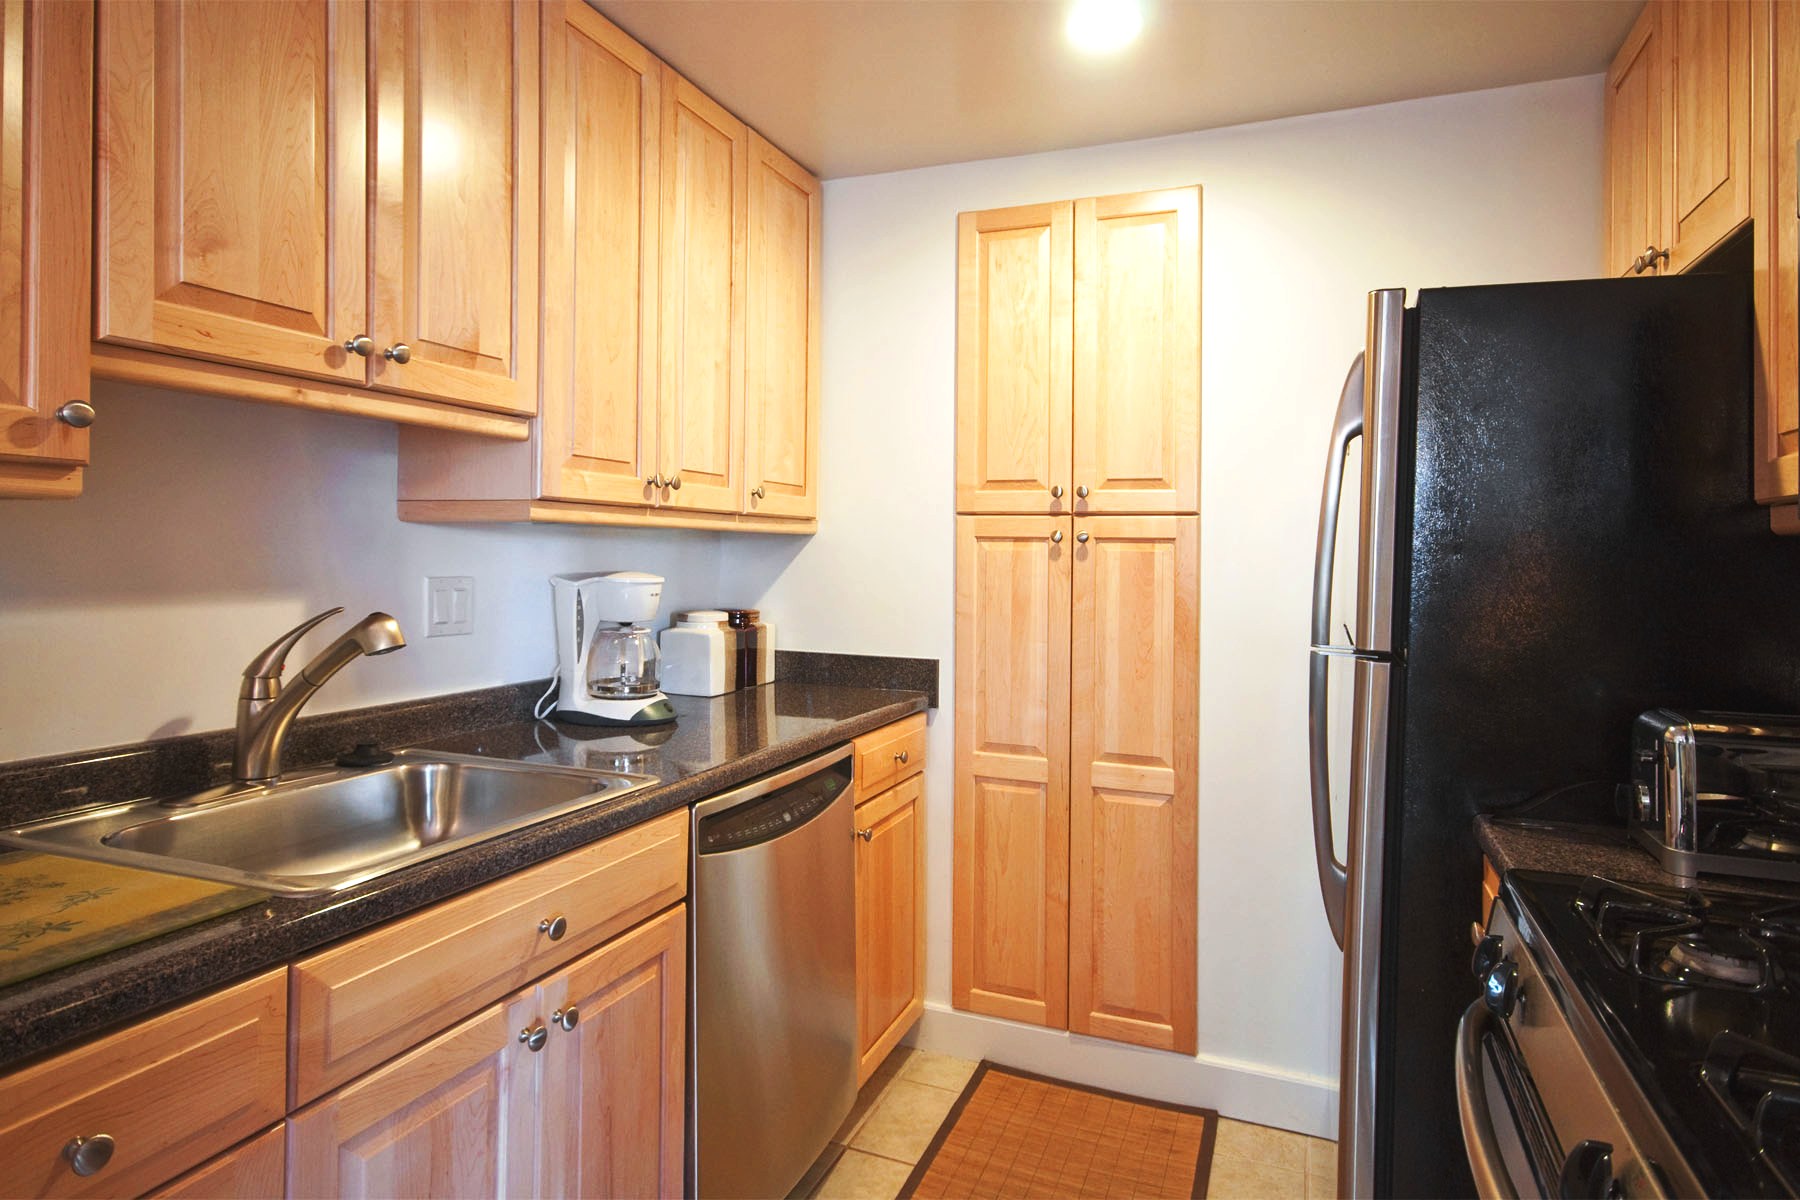 Photos of apartment on VFW Pkwy.,Boston MA 02467